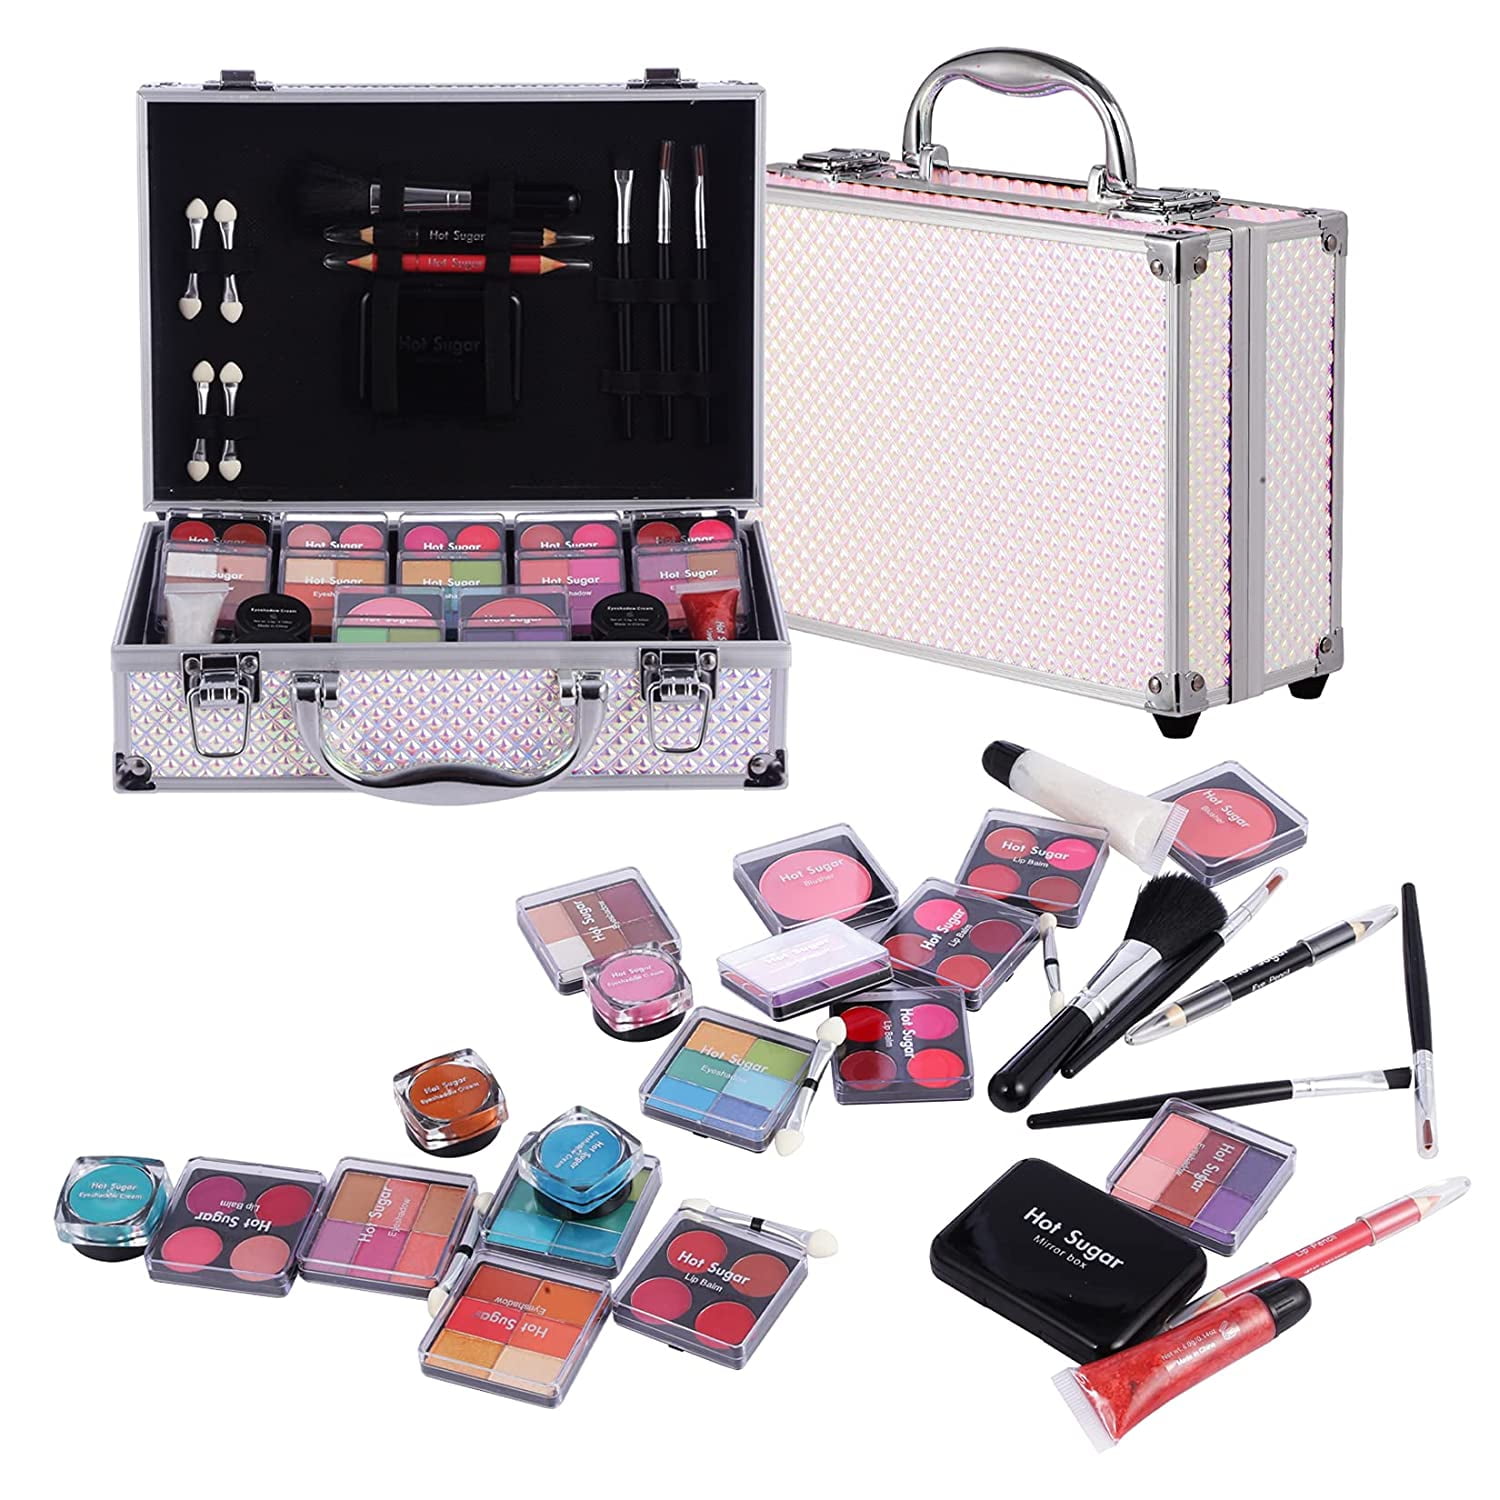 Hot Sugar Makeup Kit for Teenager Girls 10-12, All in One Beginner Makeup  Kit for Women Full Kit, Teen makeup kit Cosmetic Gift Set on Birthday